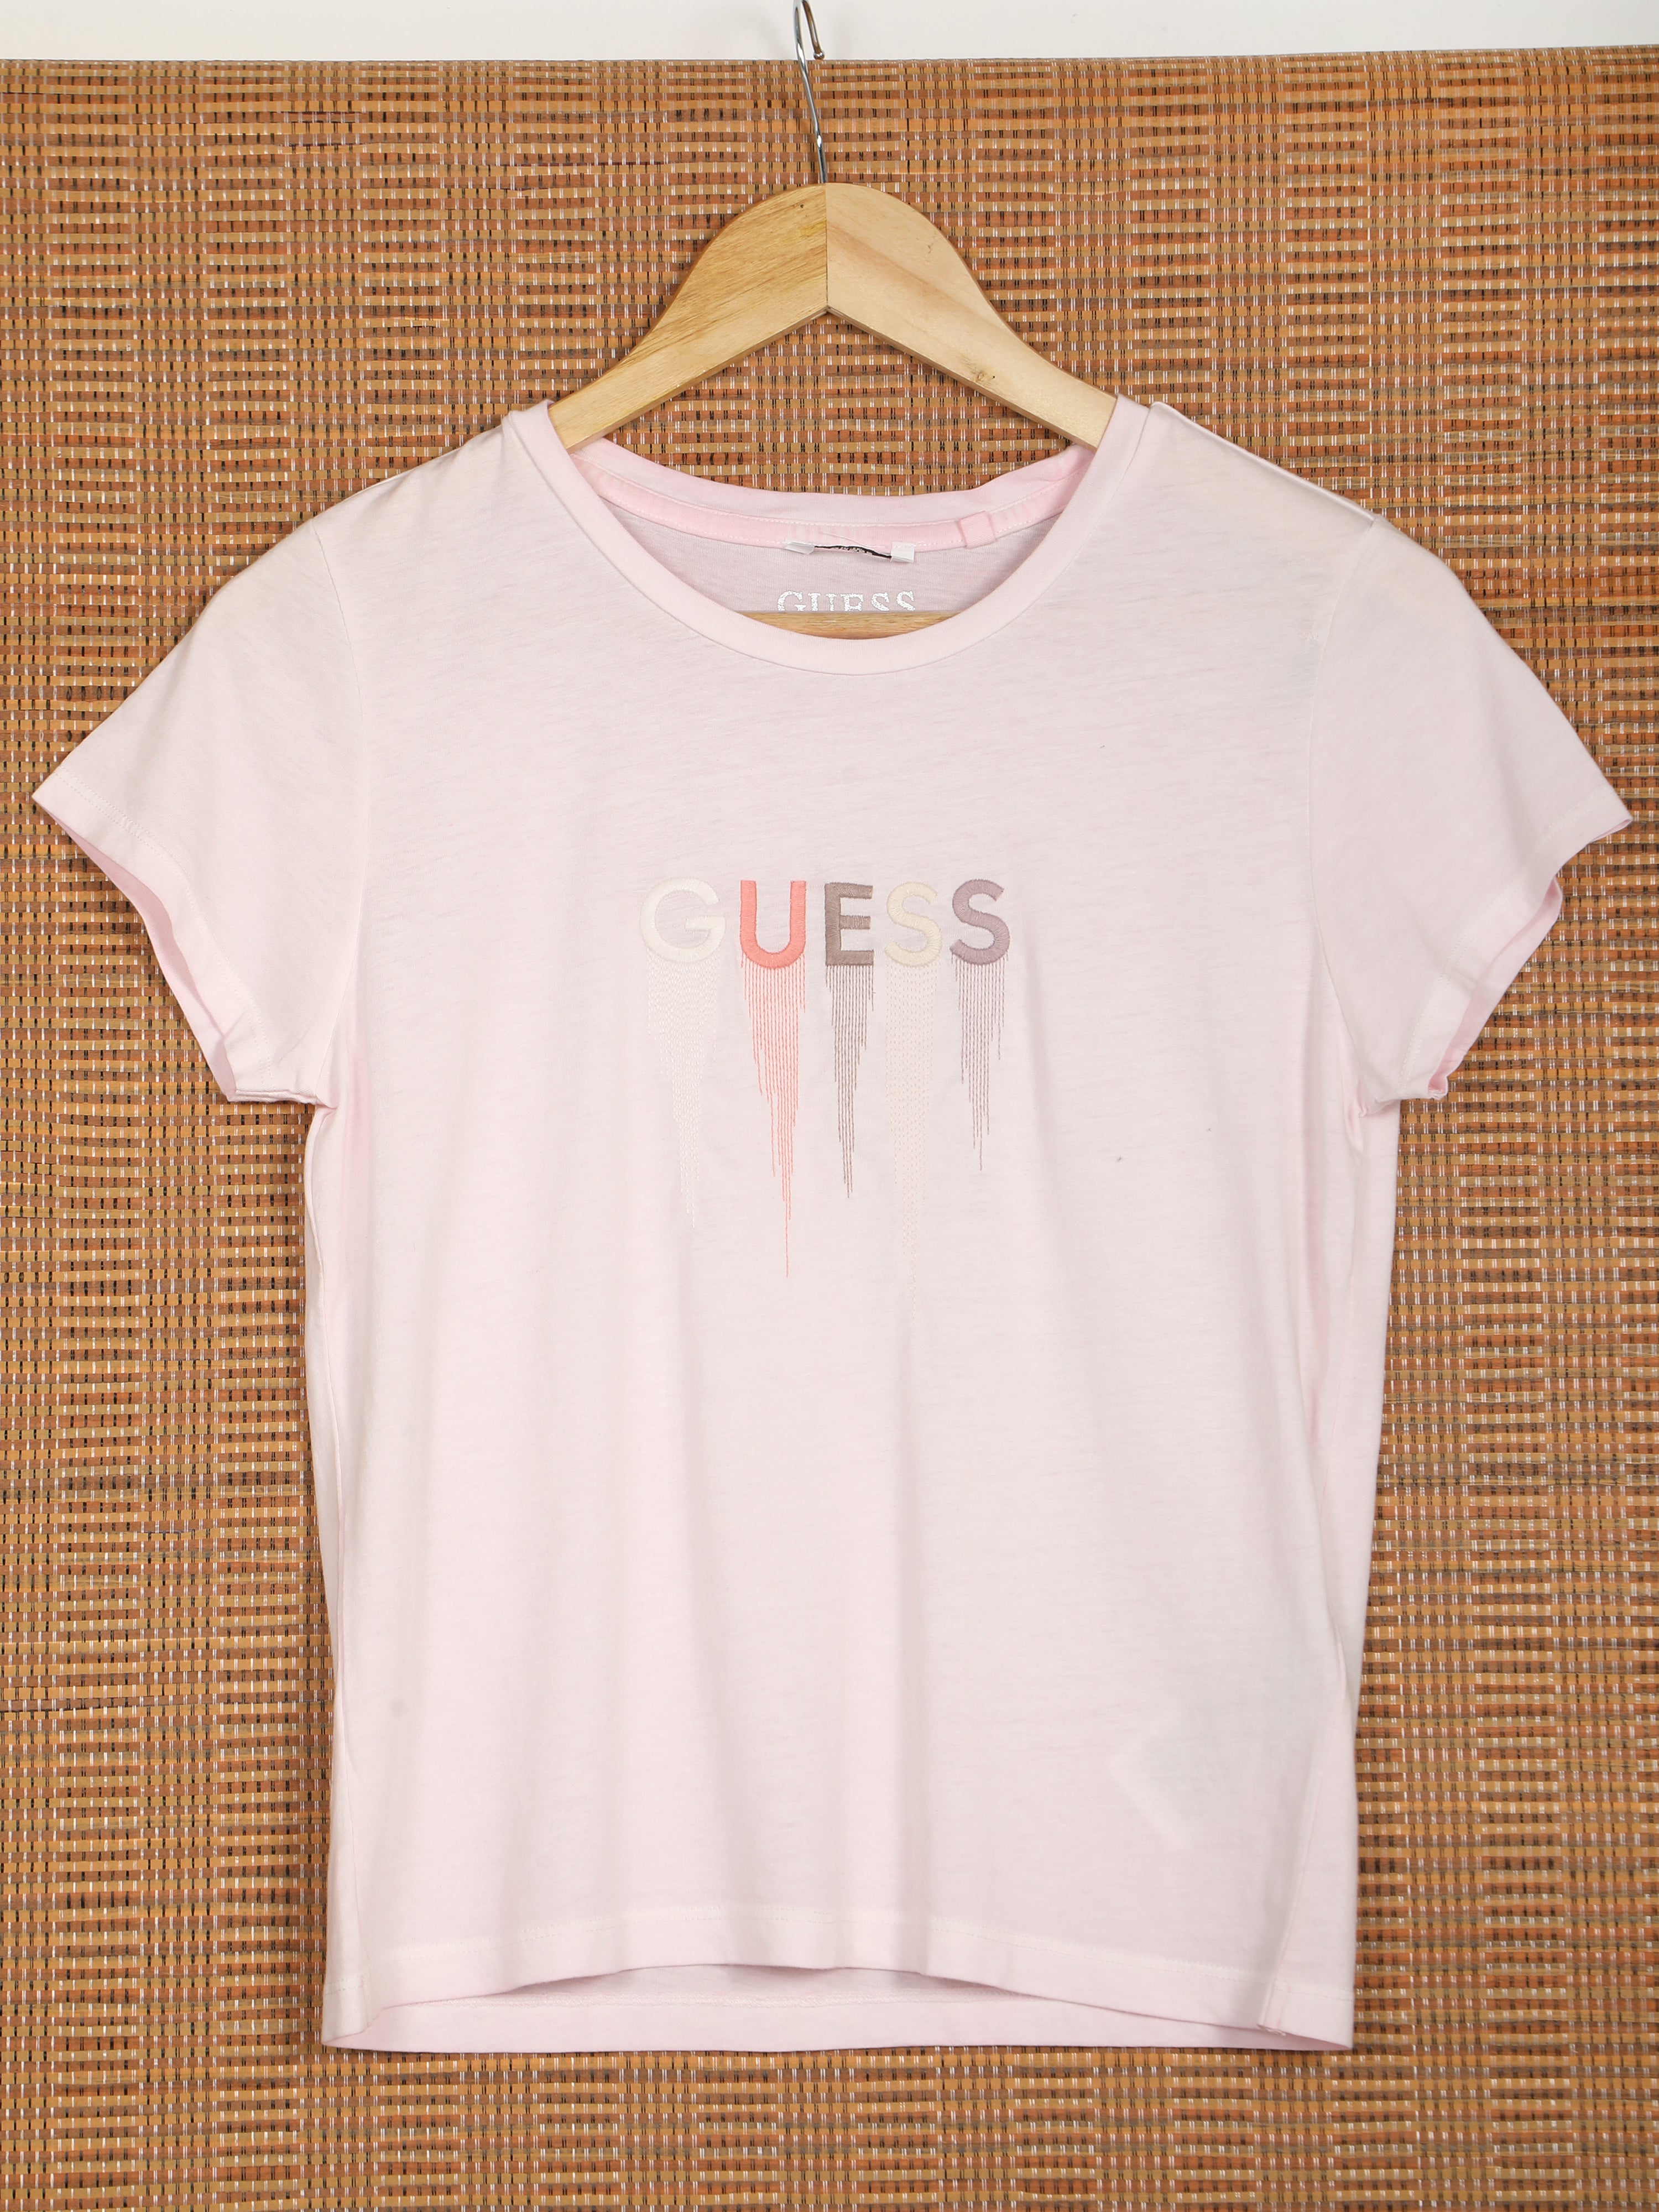 Women's Short Sleeve T-shirt-Light Pink,38